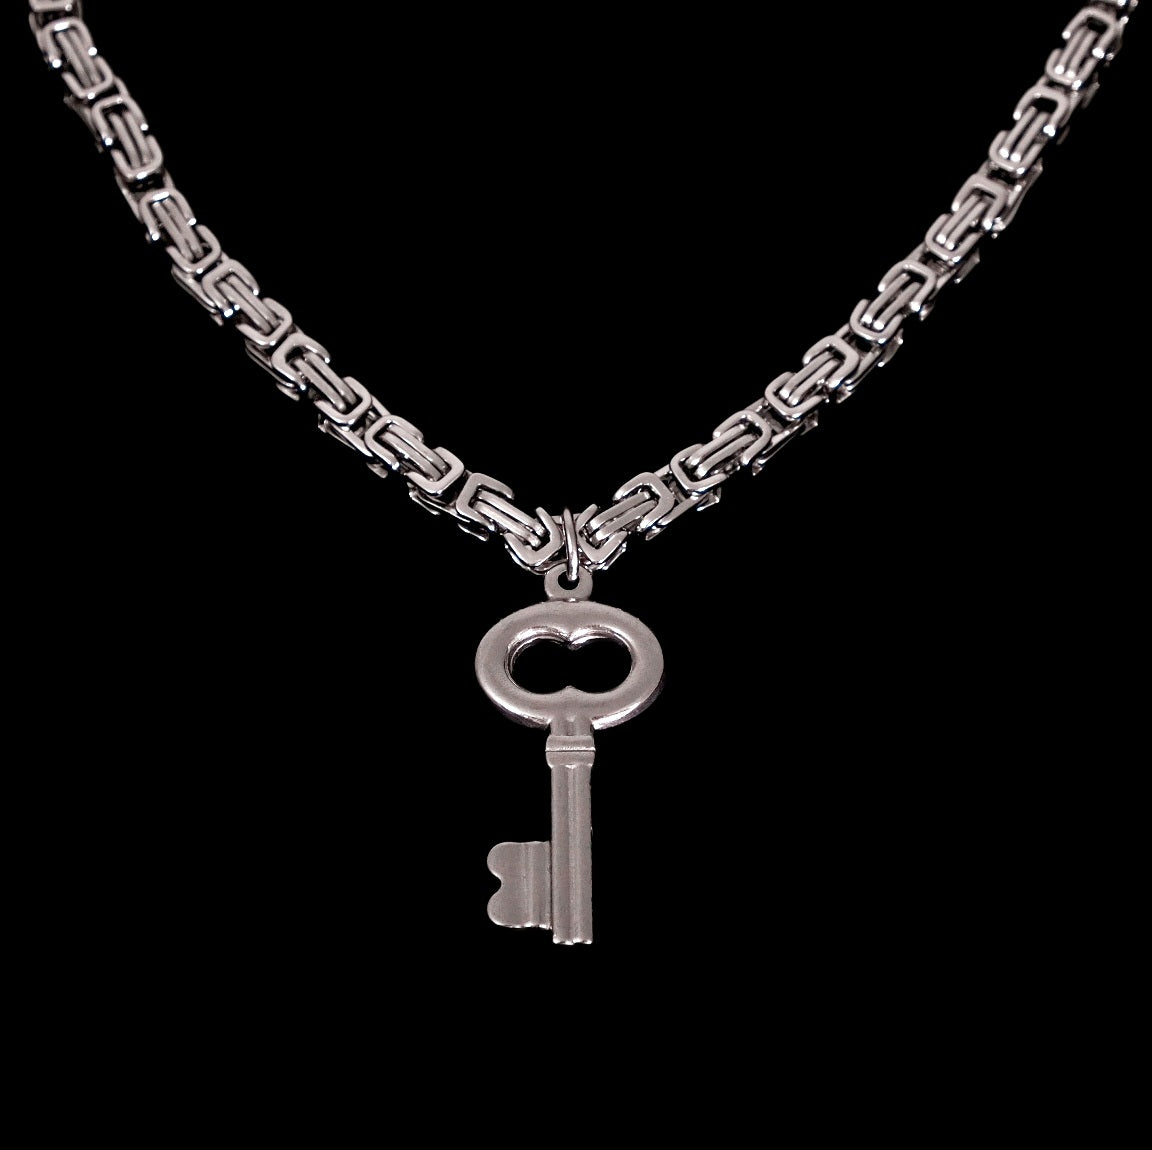 Open Doors Necklace, Lock & Key